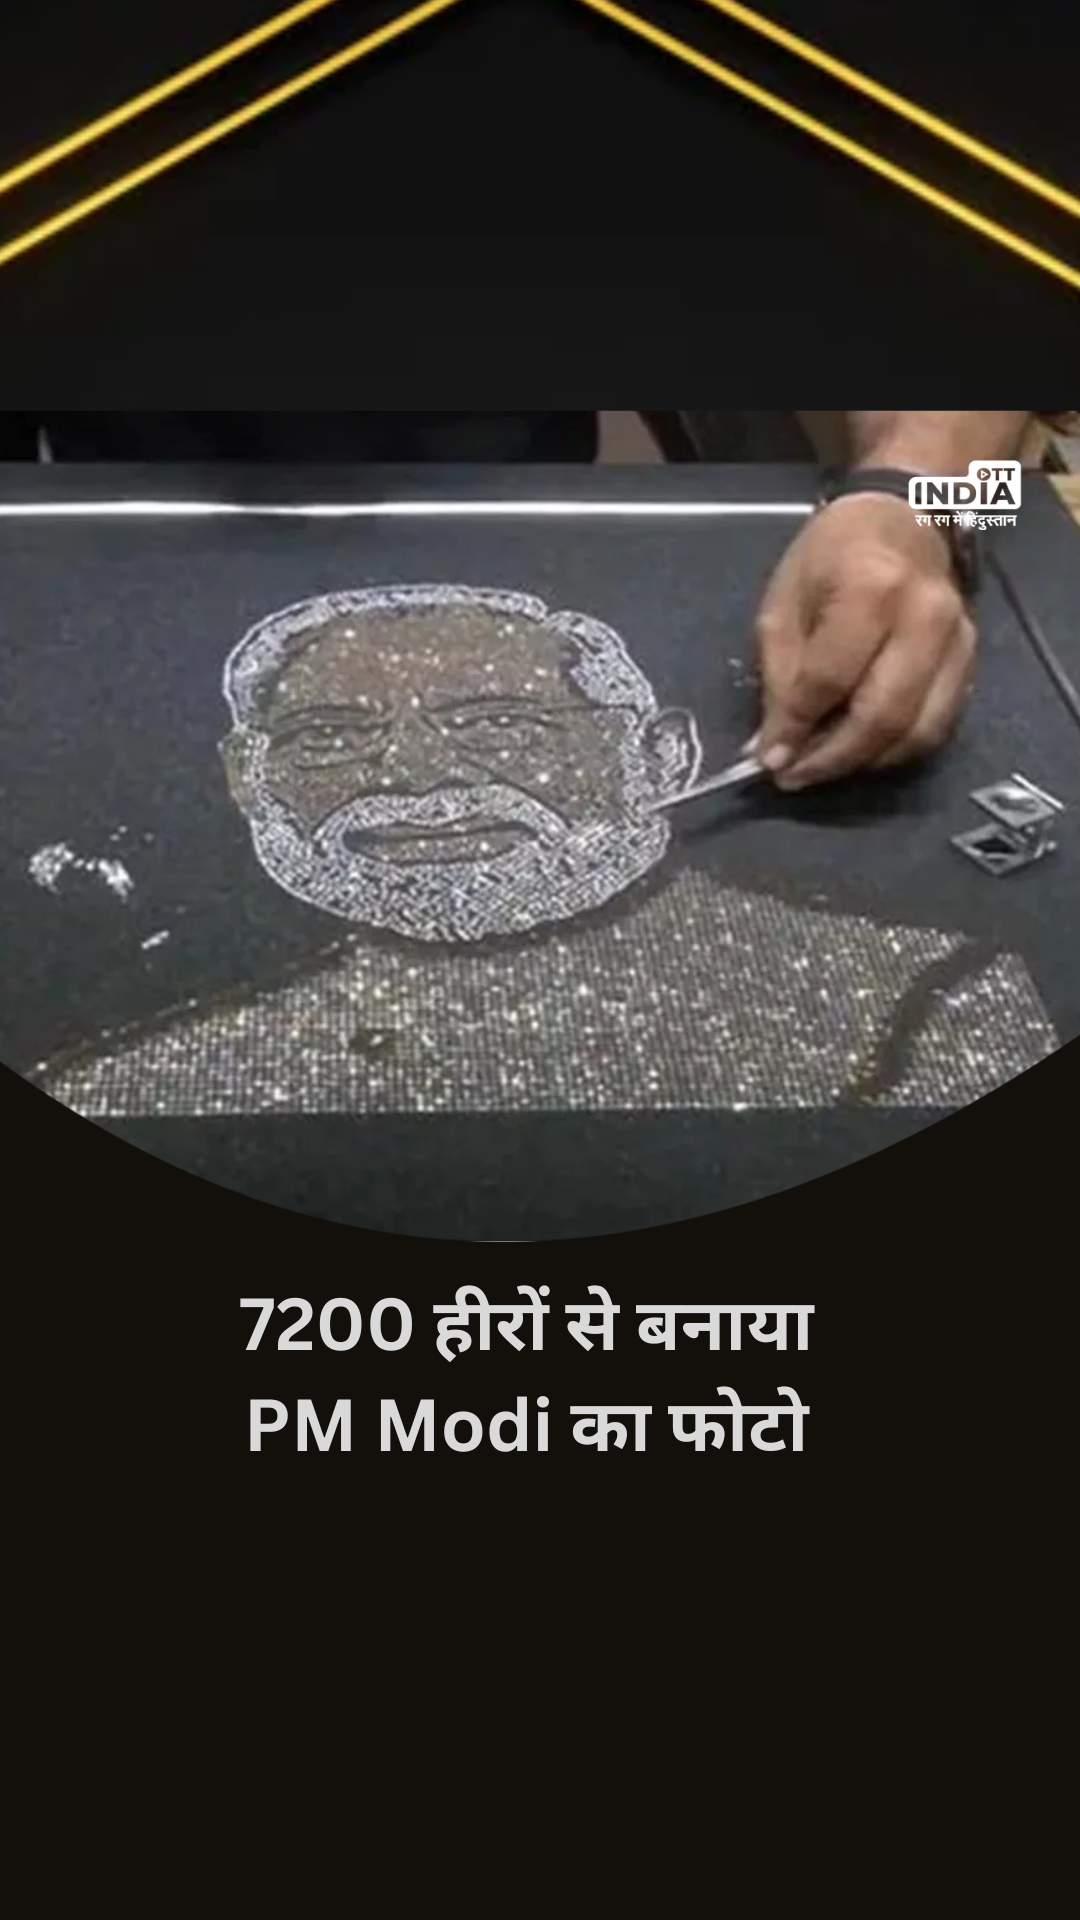 Surat के आर्किटेक्ट Vipul JP Vala ने 7200 हीरे जड़कर बनाया PM Modi का चित्र, जन्मदिन पर करना चाहते हैं गिफ्ट